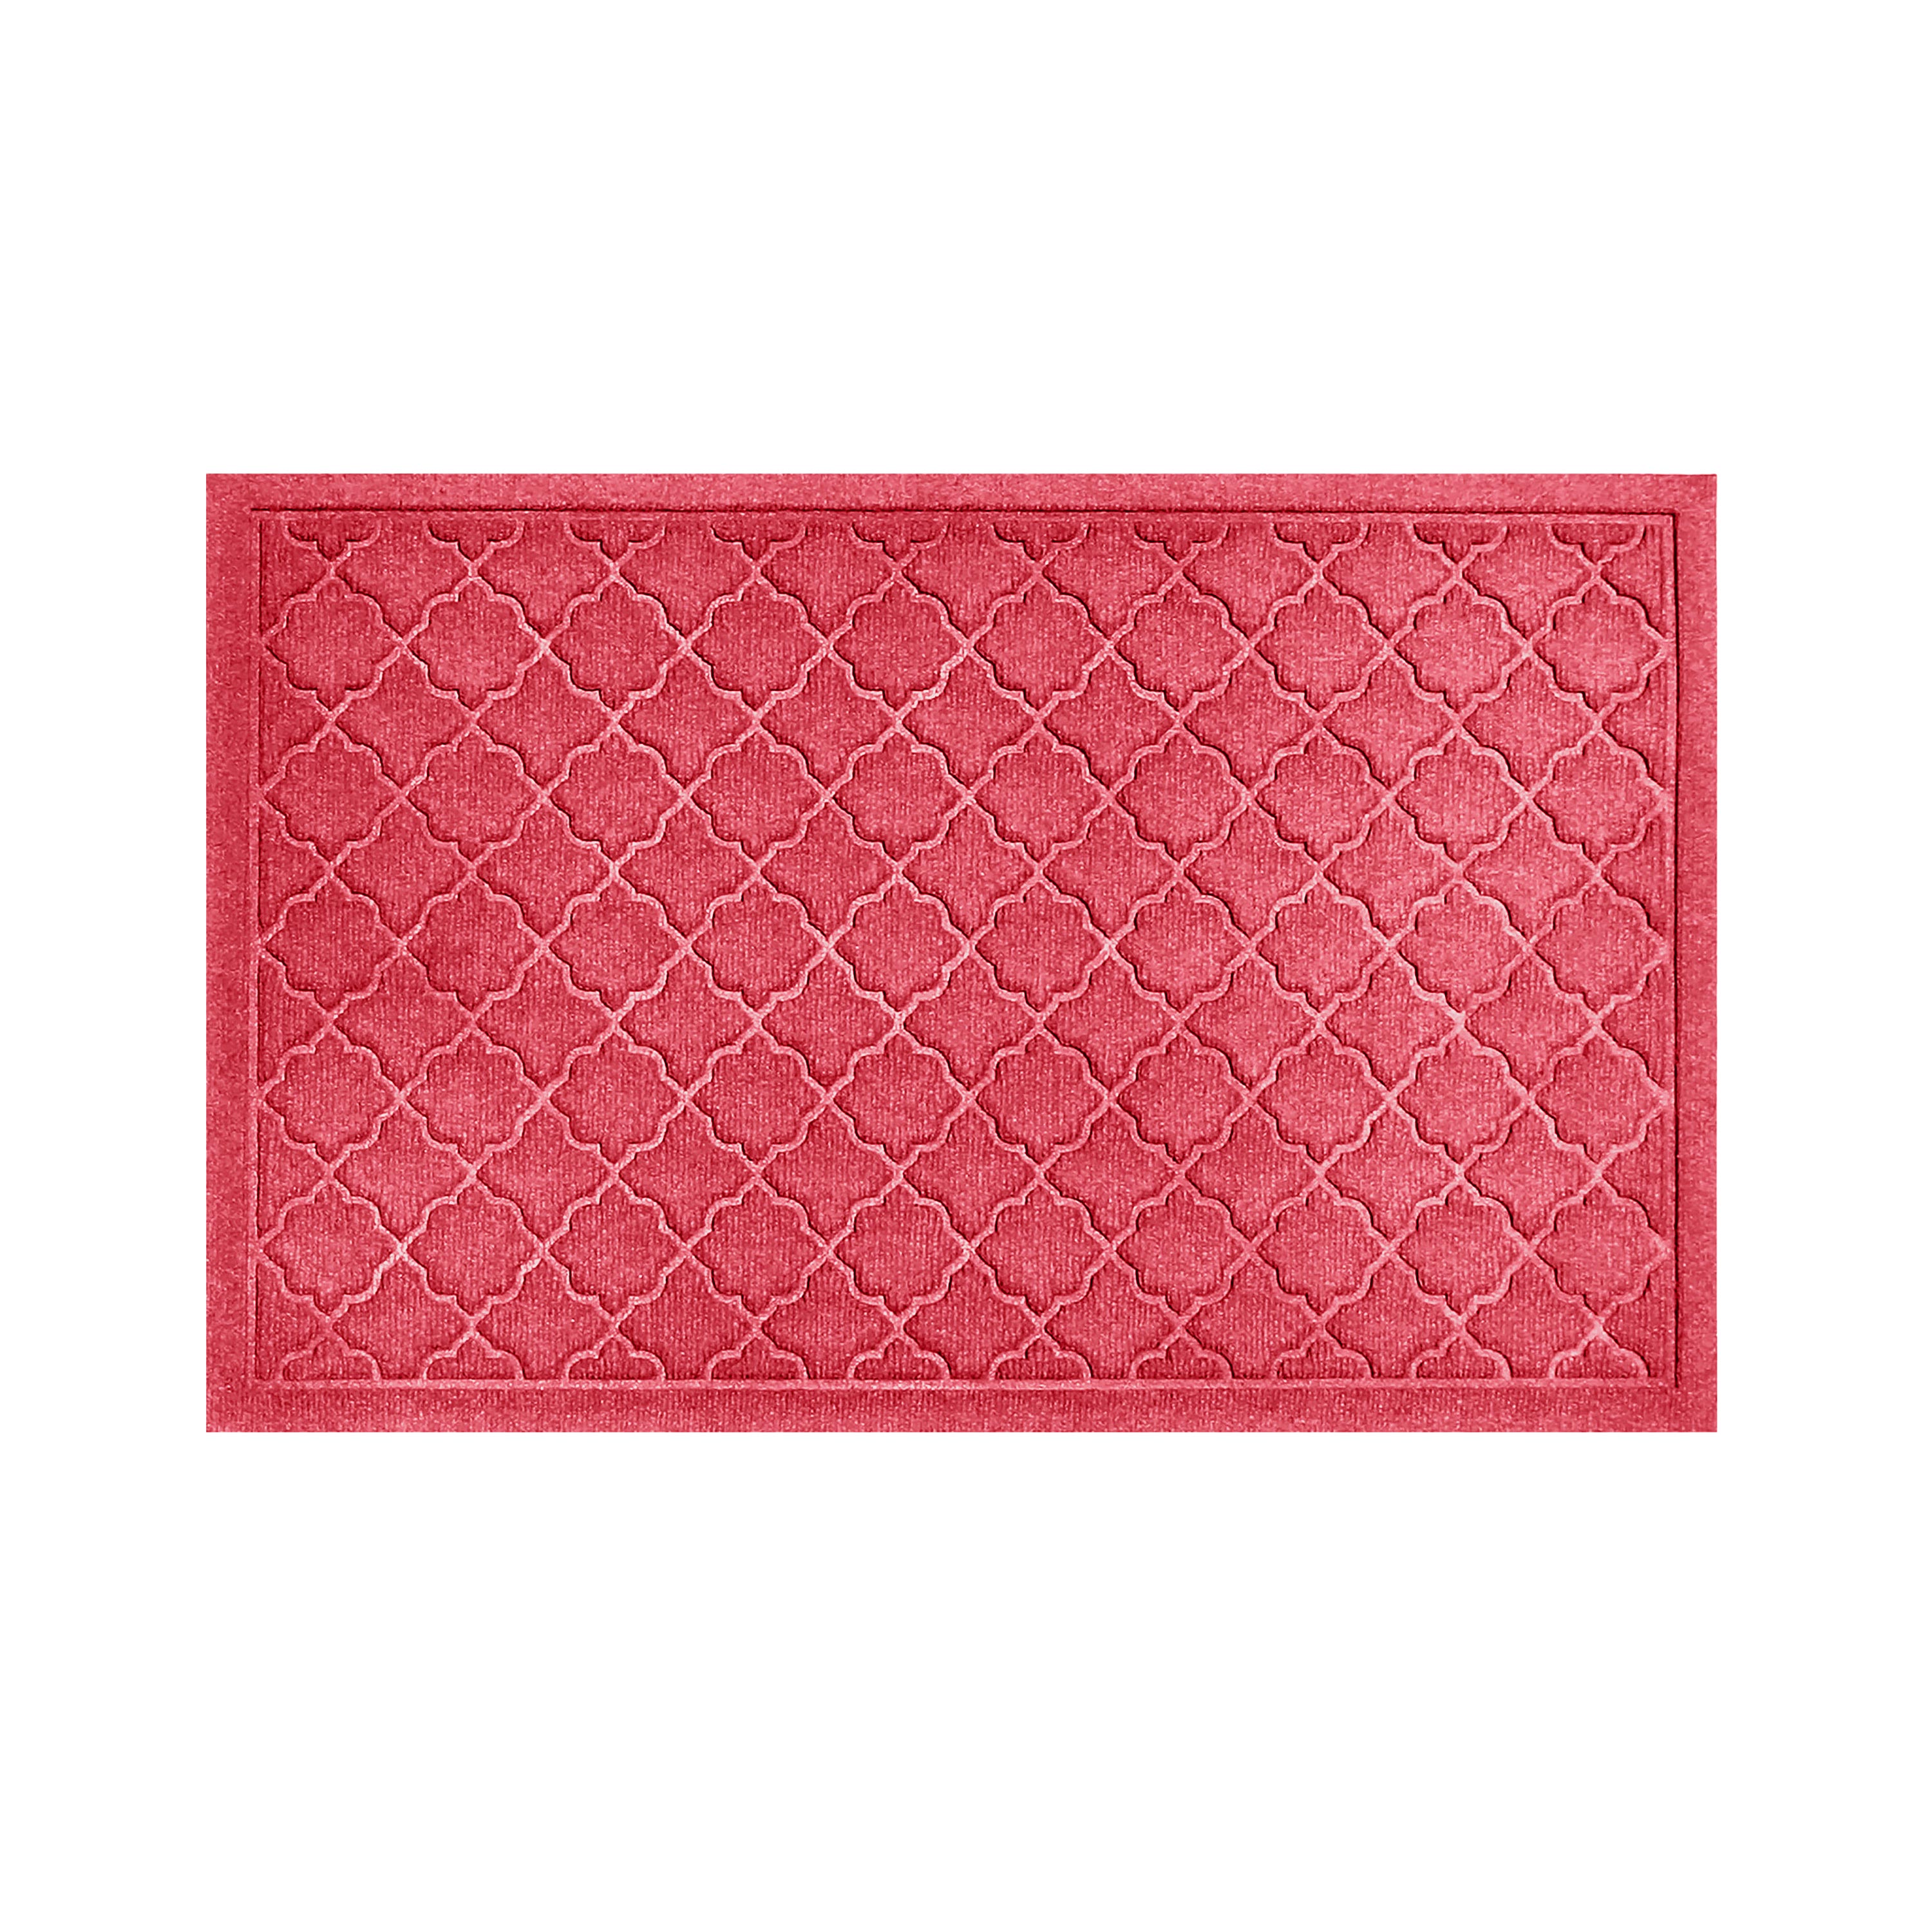 Waterhog Indoor/Outdoor Geometric Doormat, 2' x 3' - Red